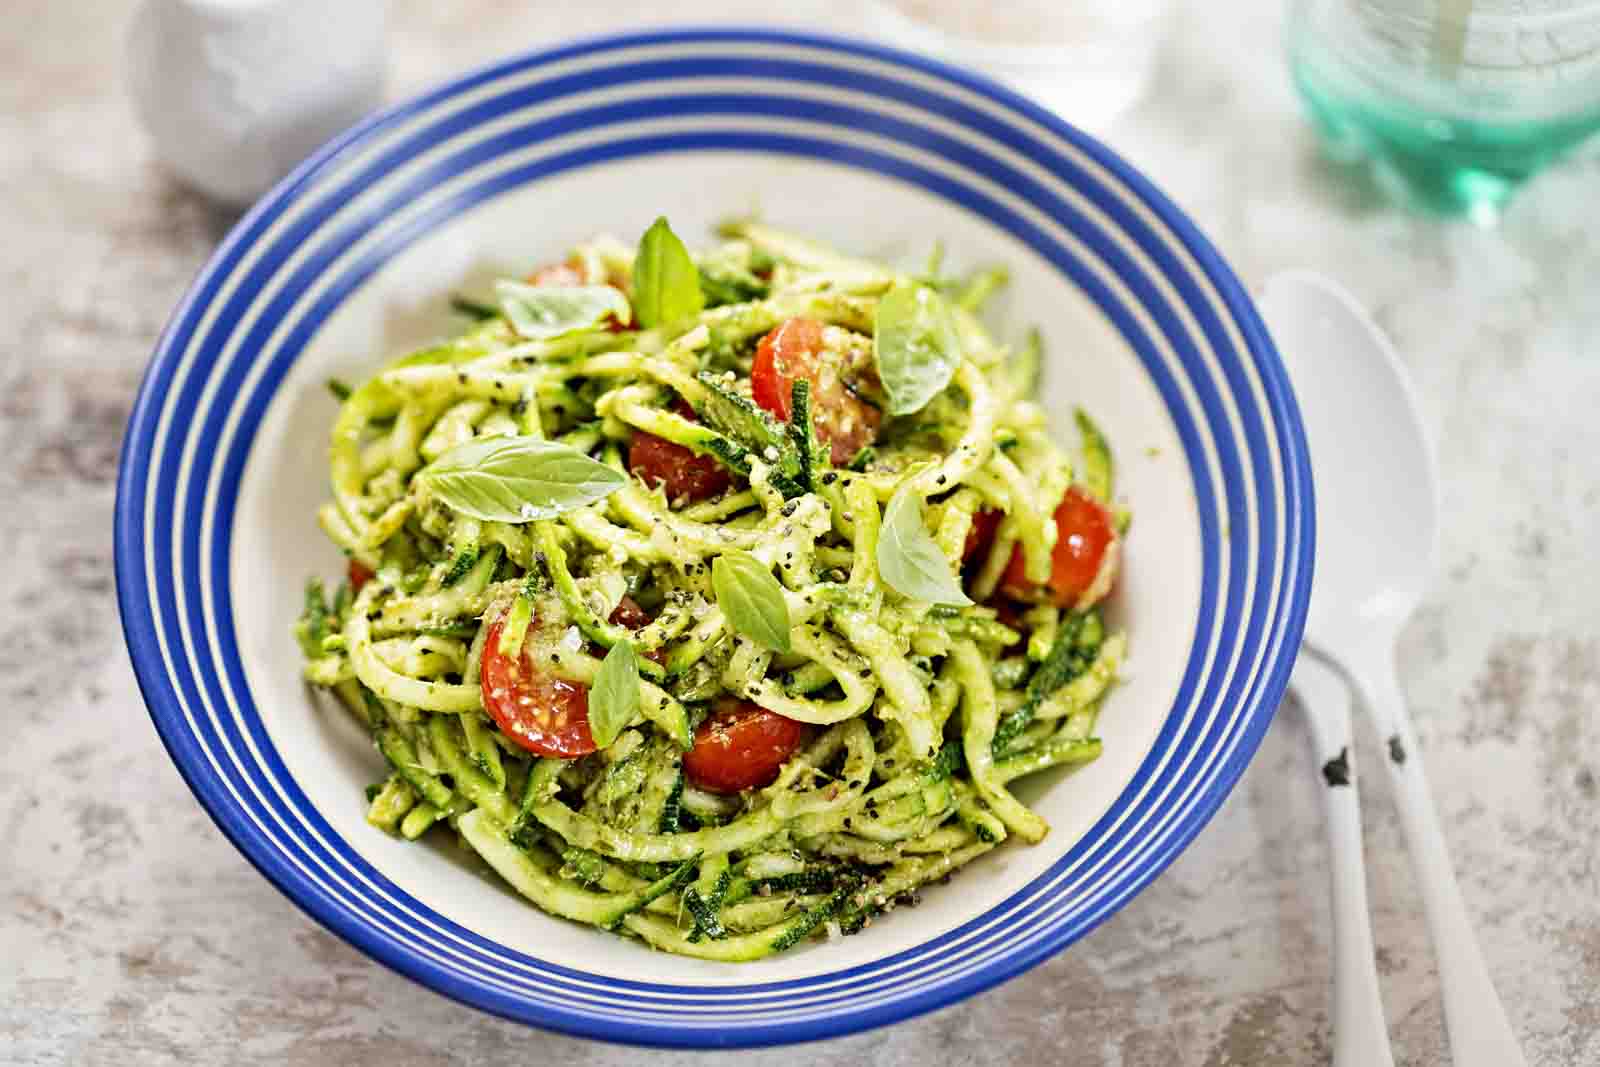  Zoodles Salad Recipe - Zucchini Noodles